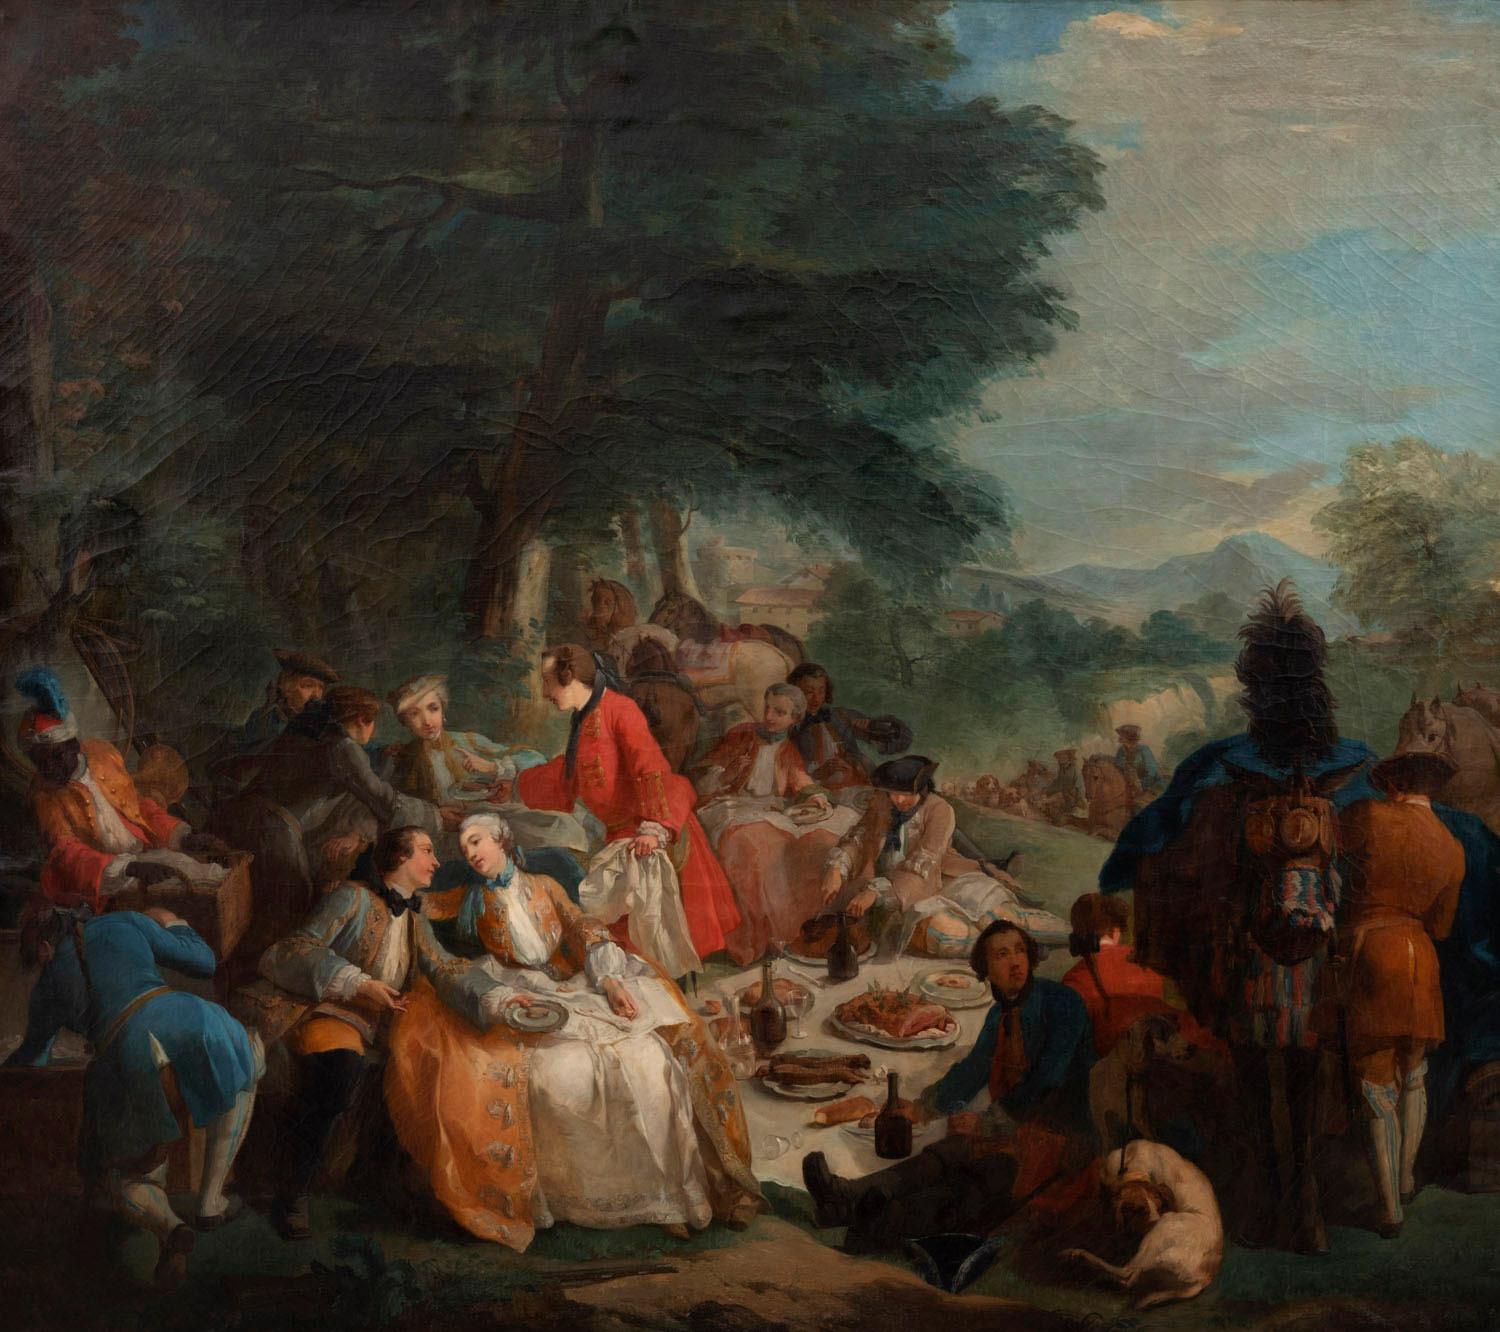 Nach Carle Van Loo, La halte de chasse (1737) (auf Englisch 